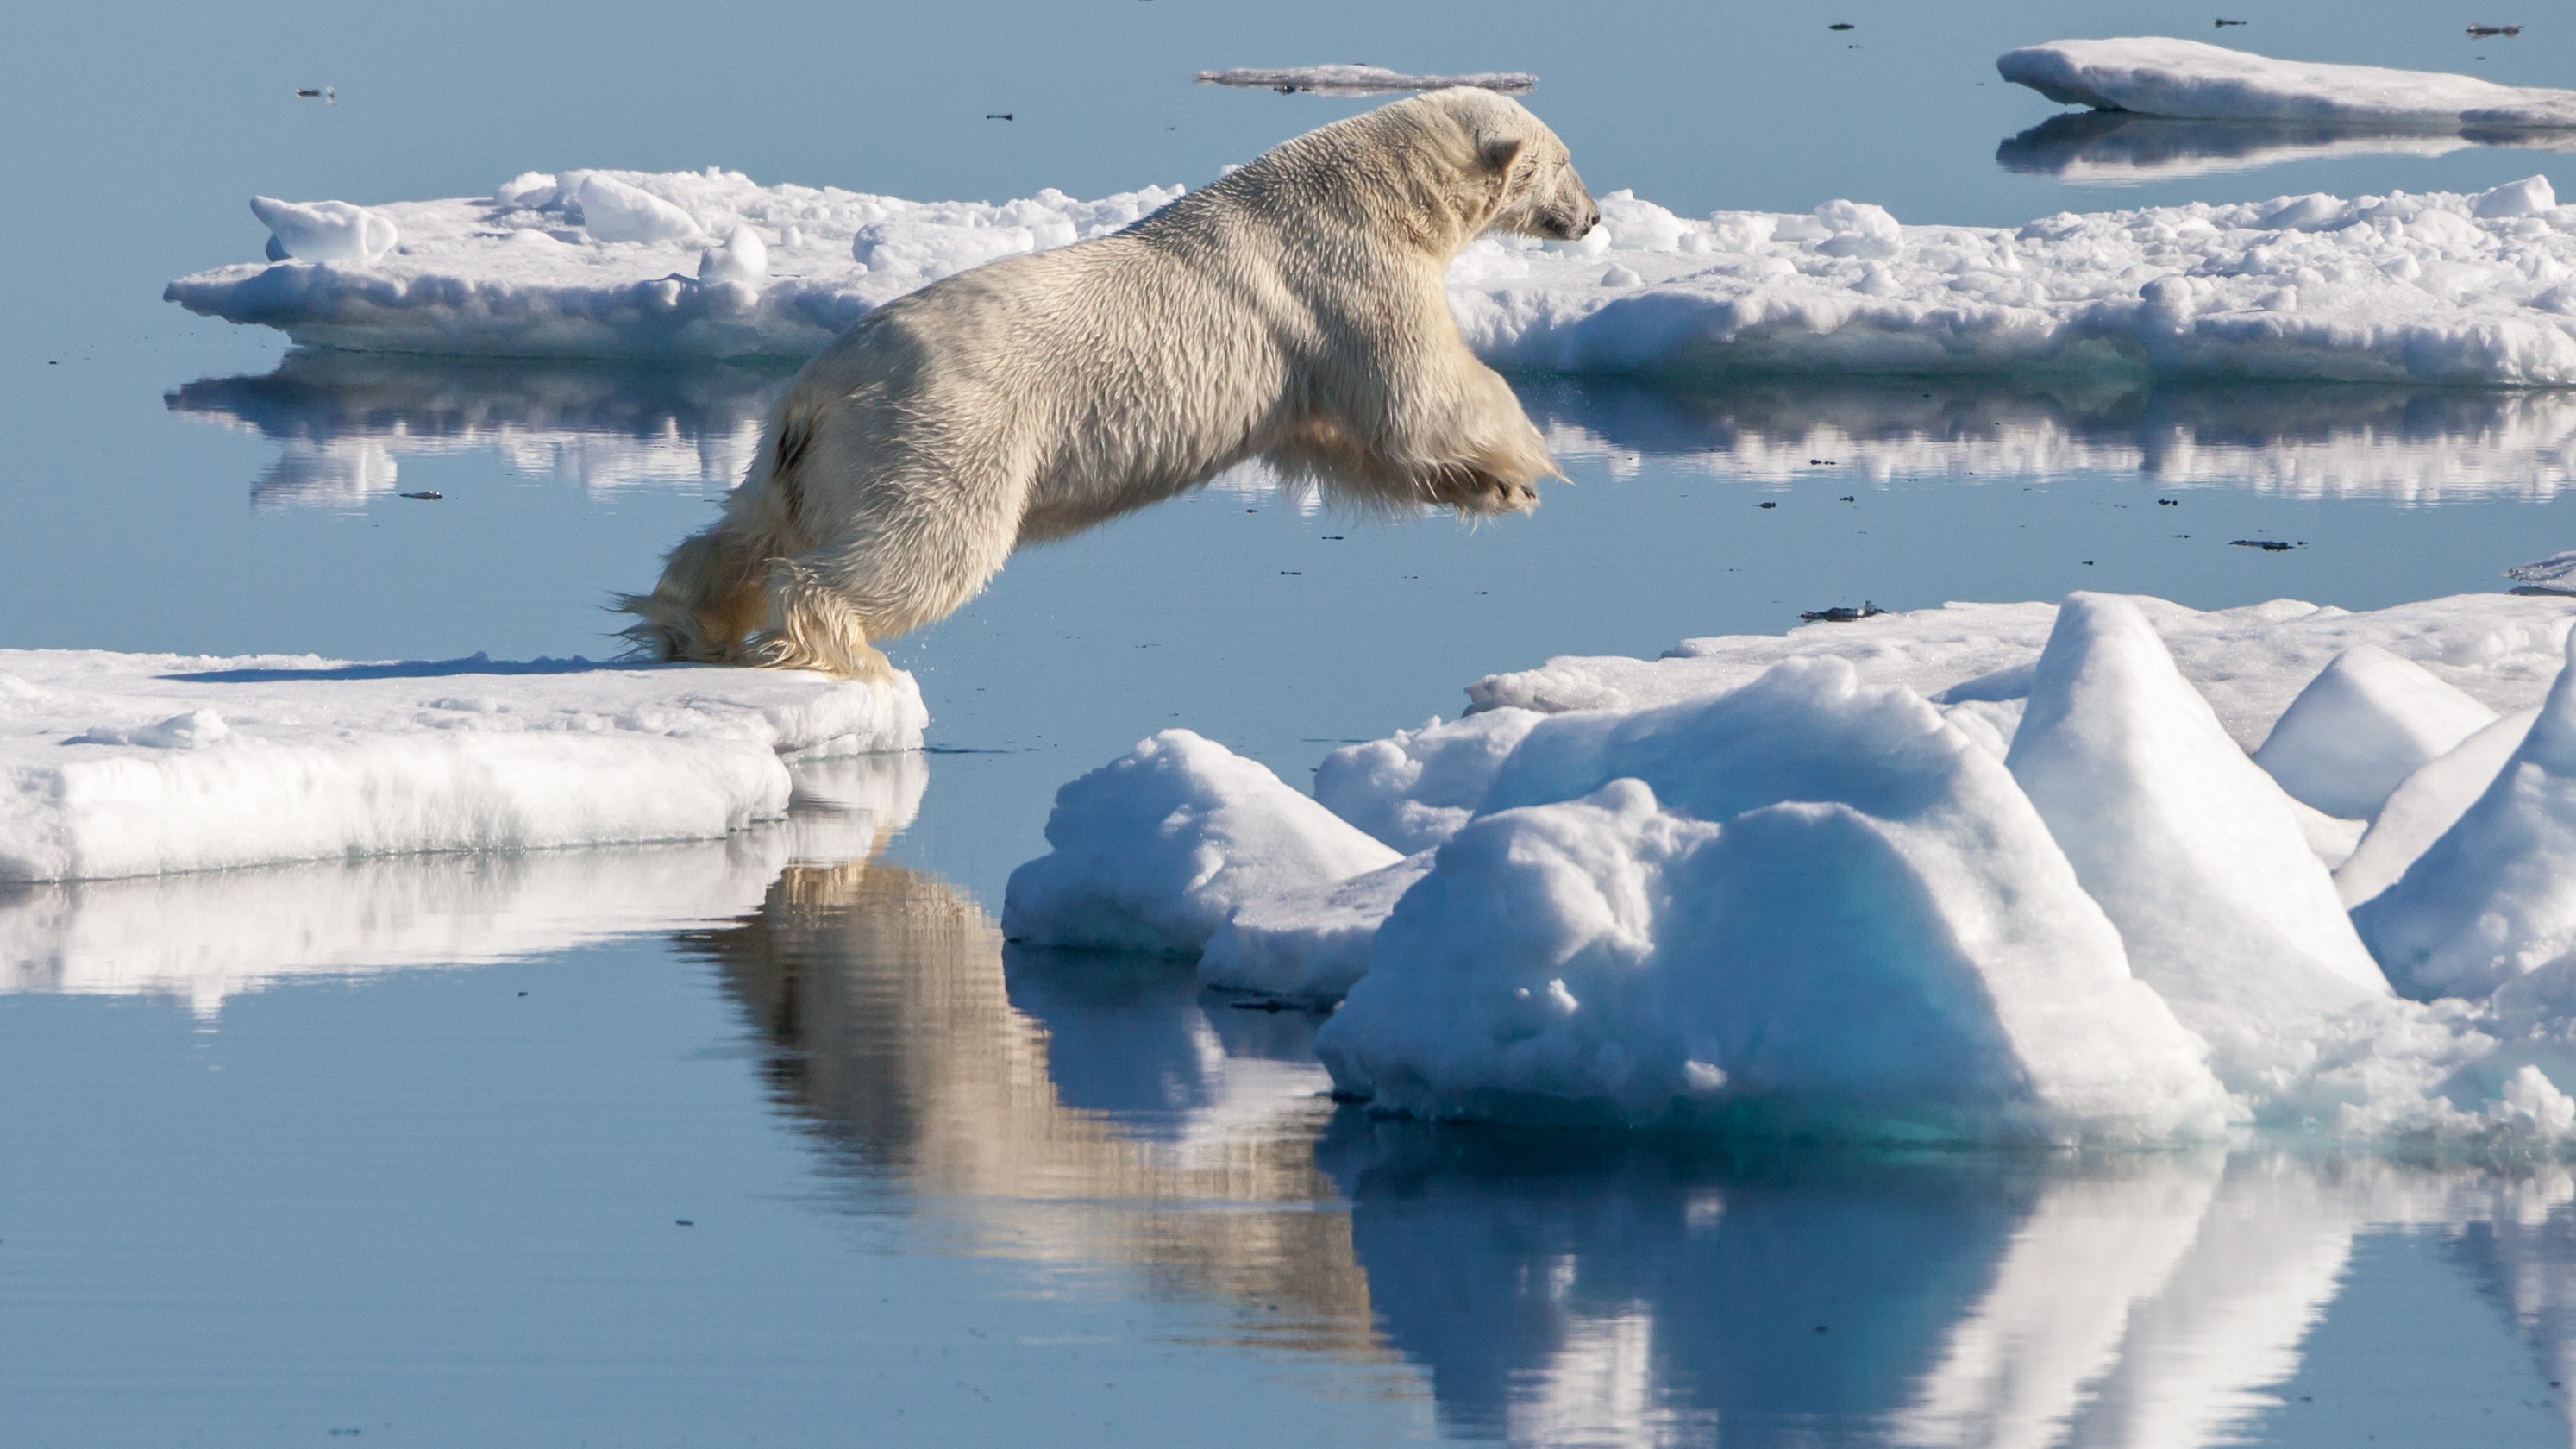 Les ours polaires sont classés comme espèce menacée depuis 2008. © Andreas Weith, Wikimedia Commons, CC BY-SA 4.0